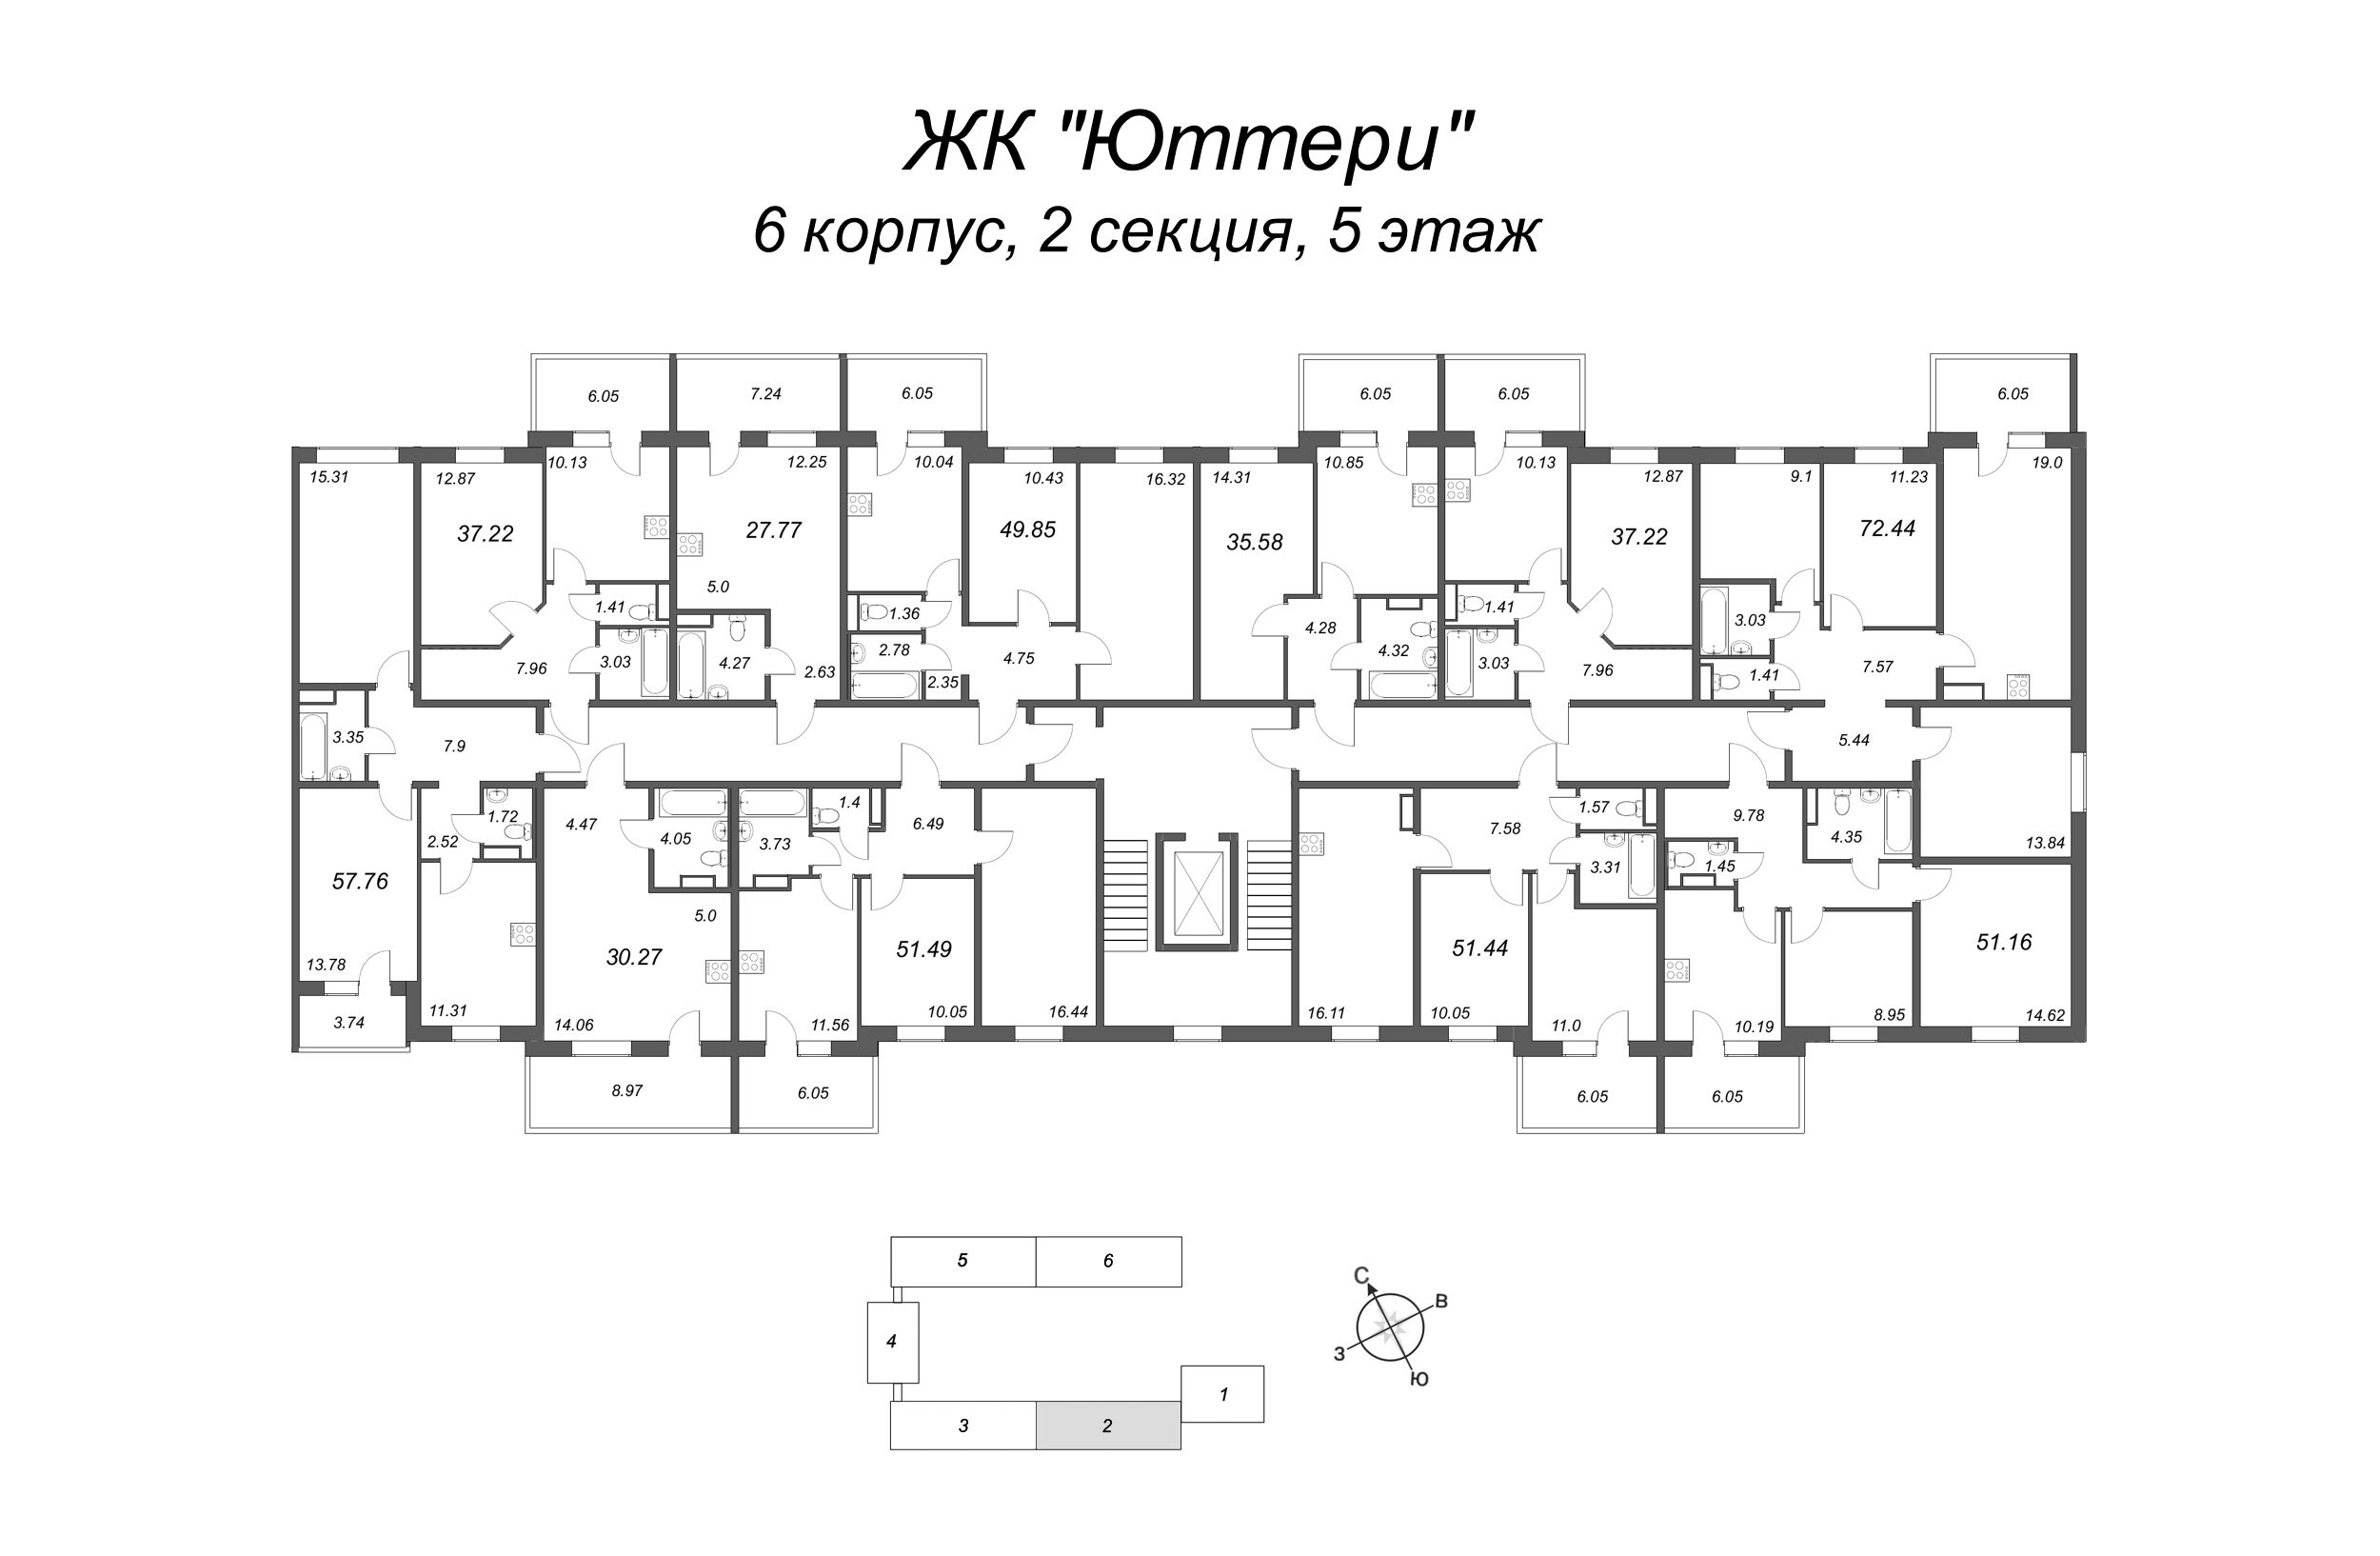 Квартира-студия, 24.15 м² в ЖК "Юттери" - планировка этажа